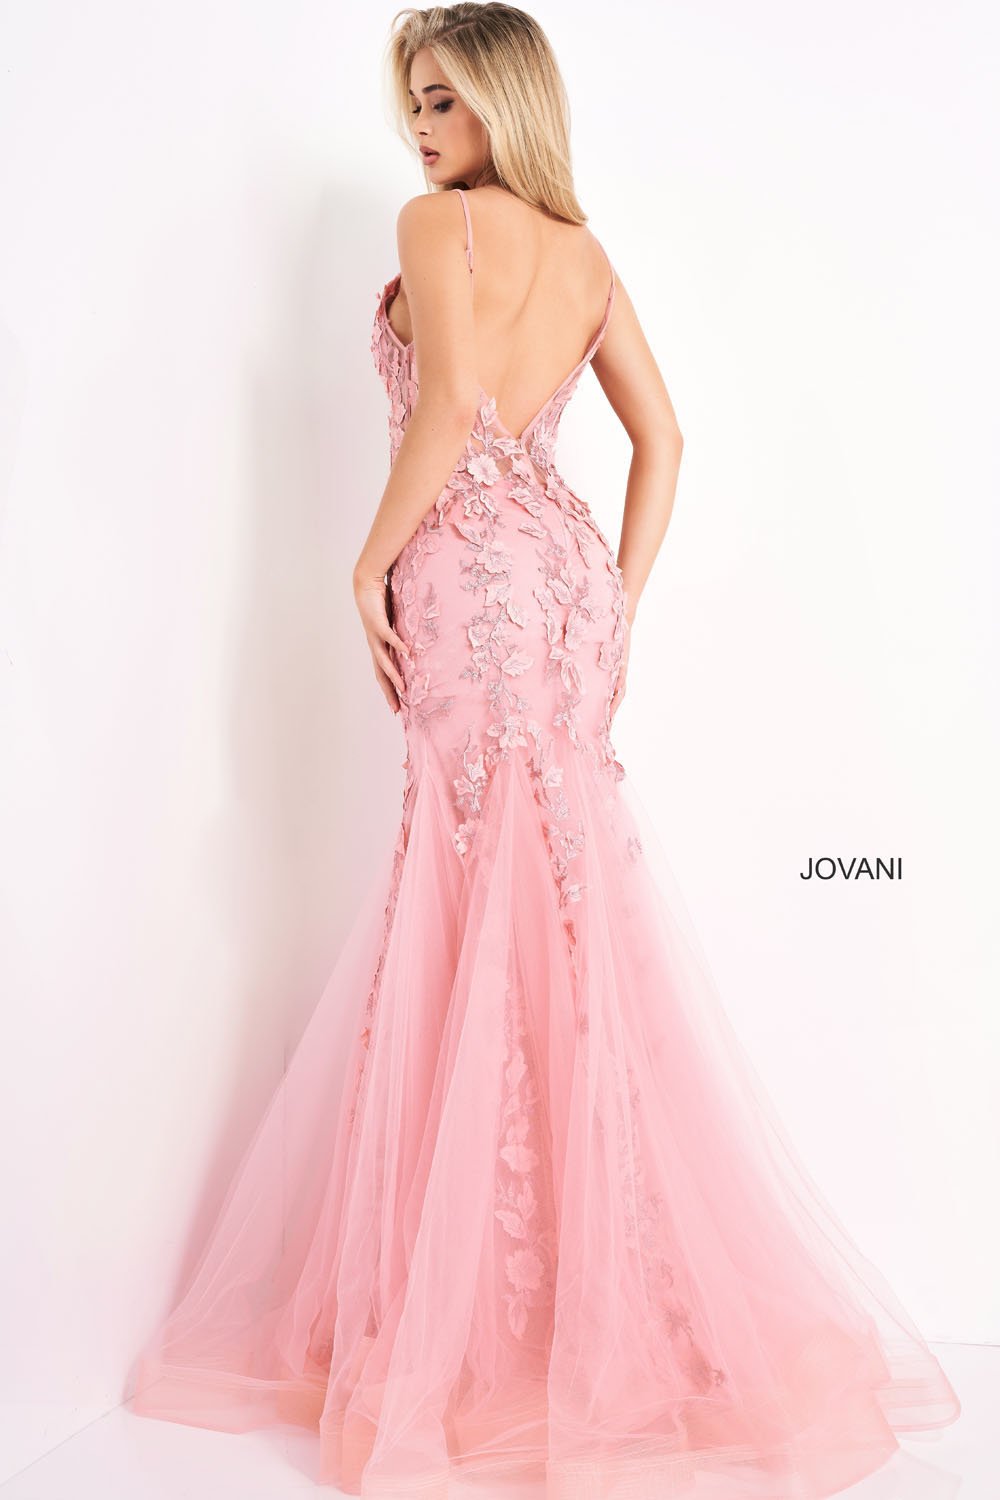 Jovani 02841 Dresses